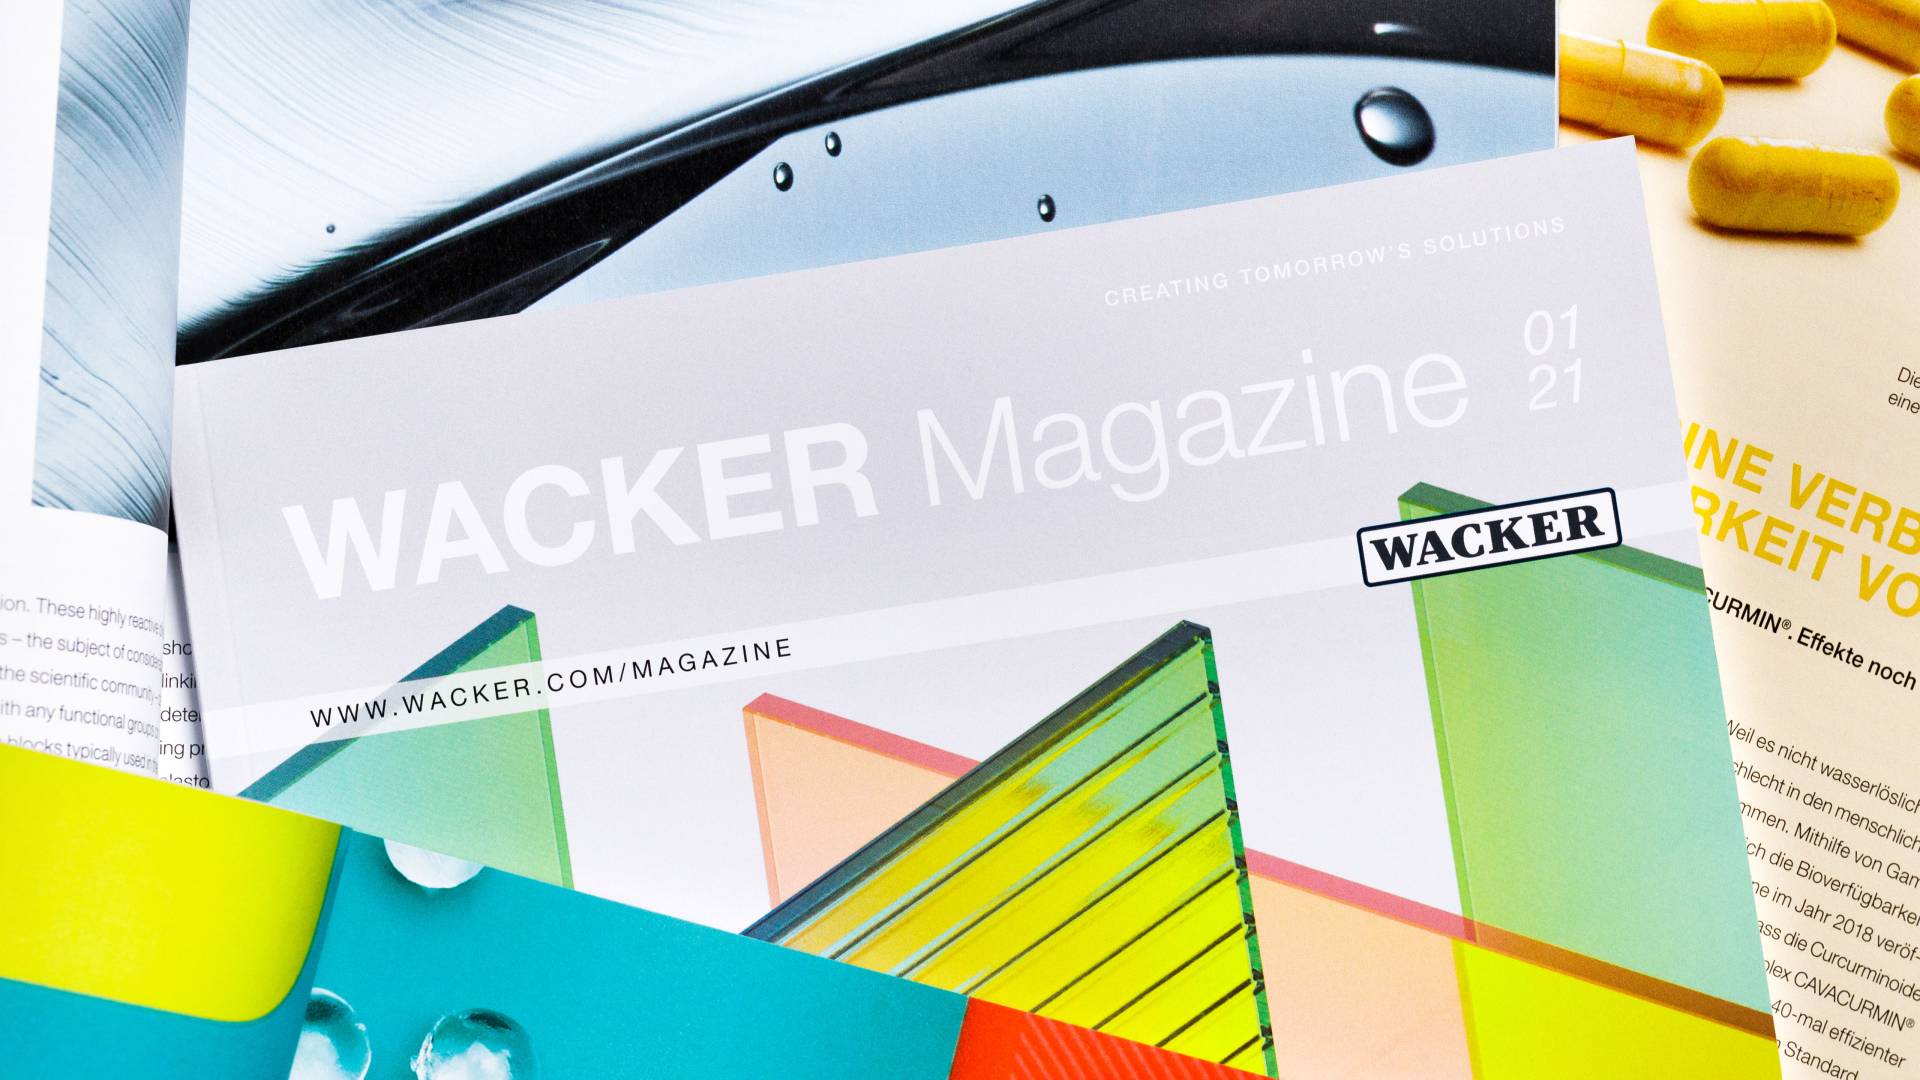 WACKER Magazine